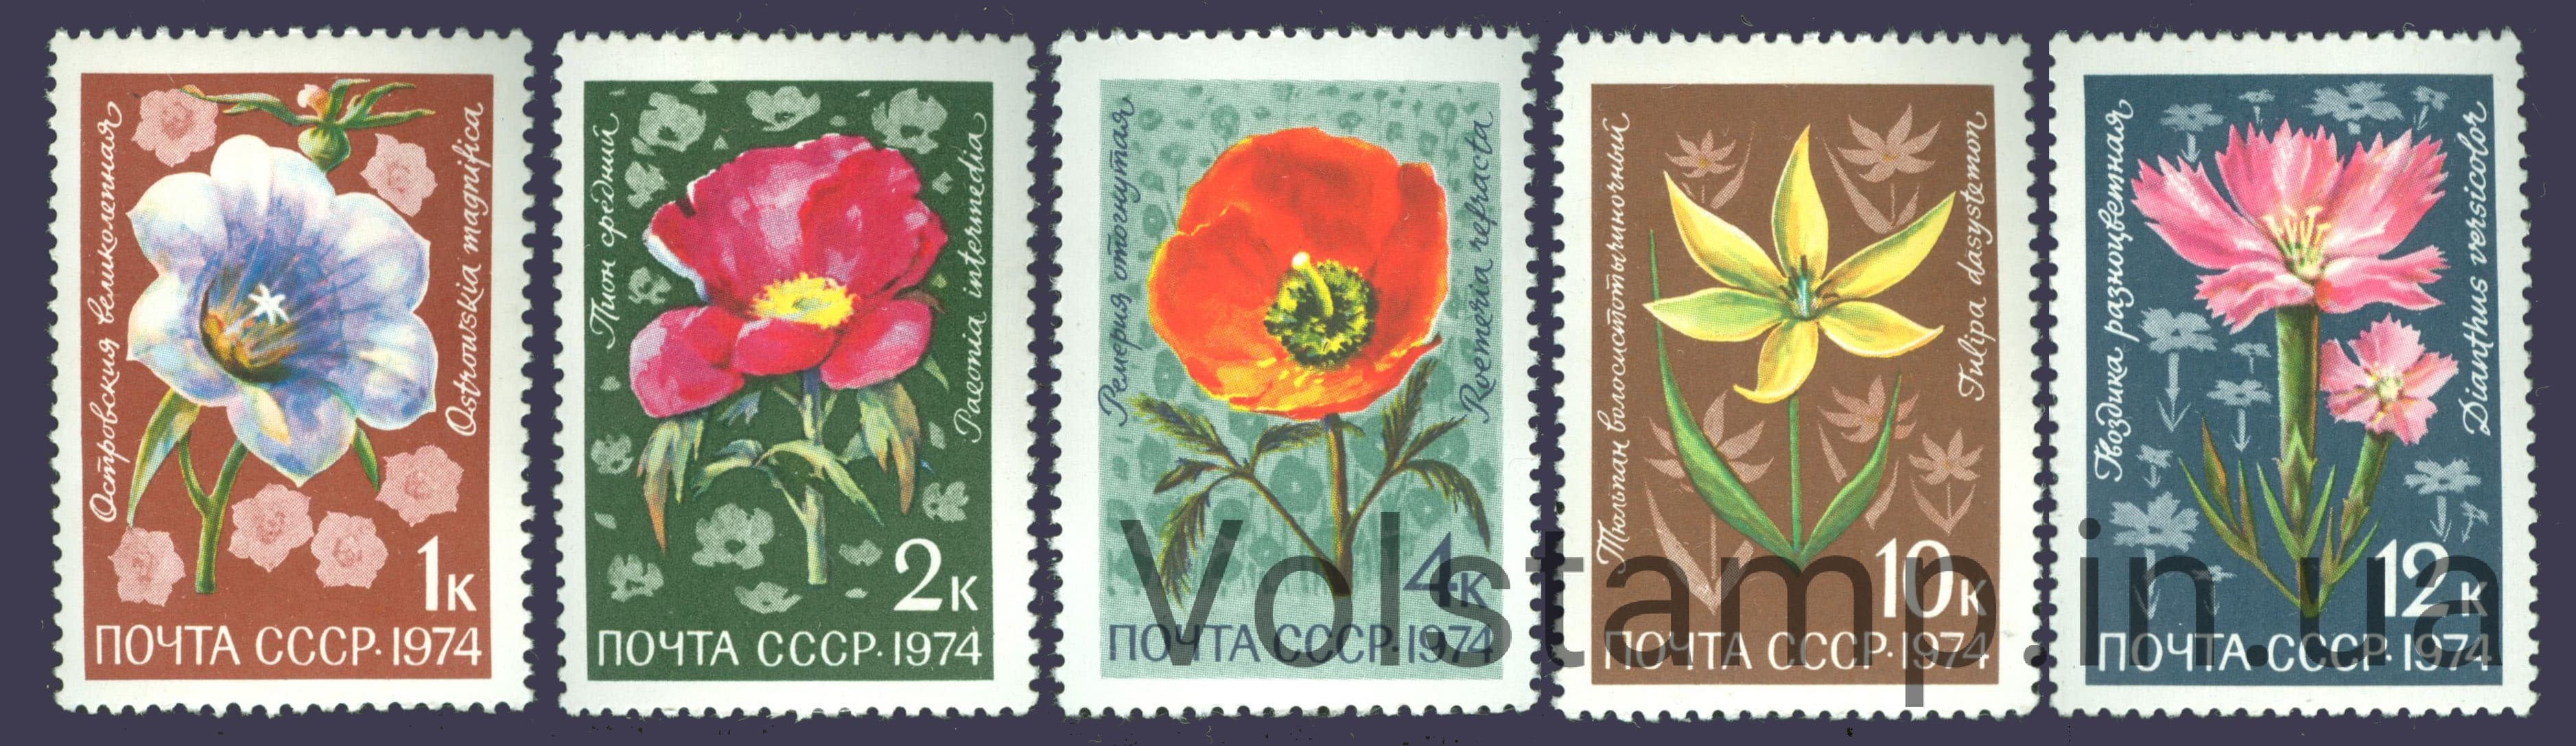 1974 серия марок Цветы альпийских лугов Средней Азии №4351-4355